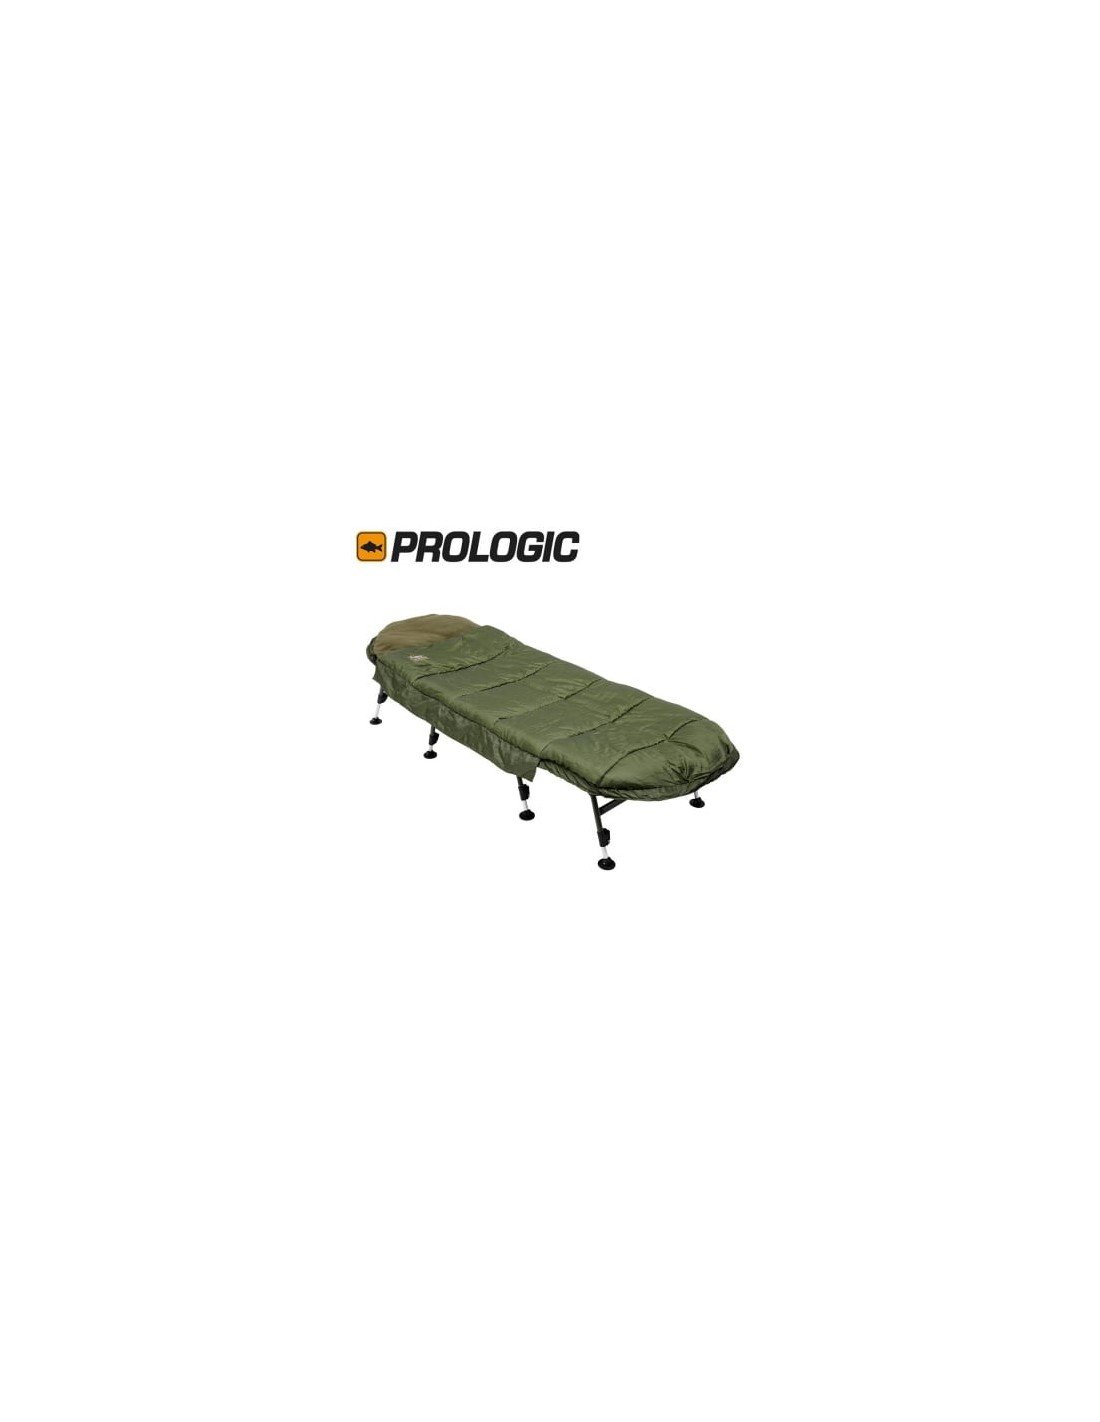 Prologic Avenger Sleeping Bag & Bedchair System 8 Leg легло - система за сън